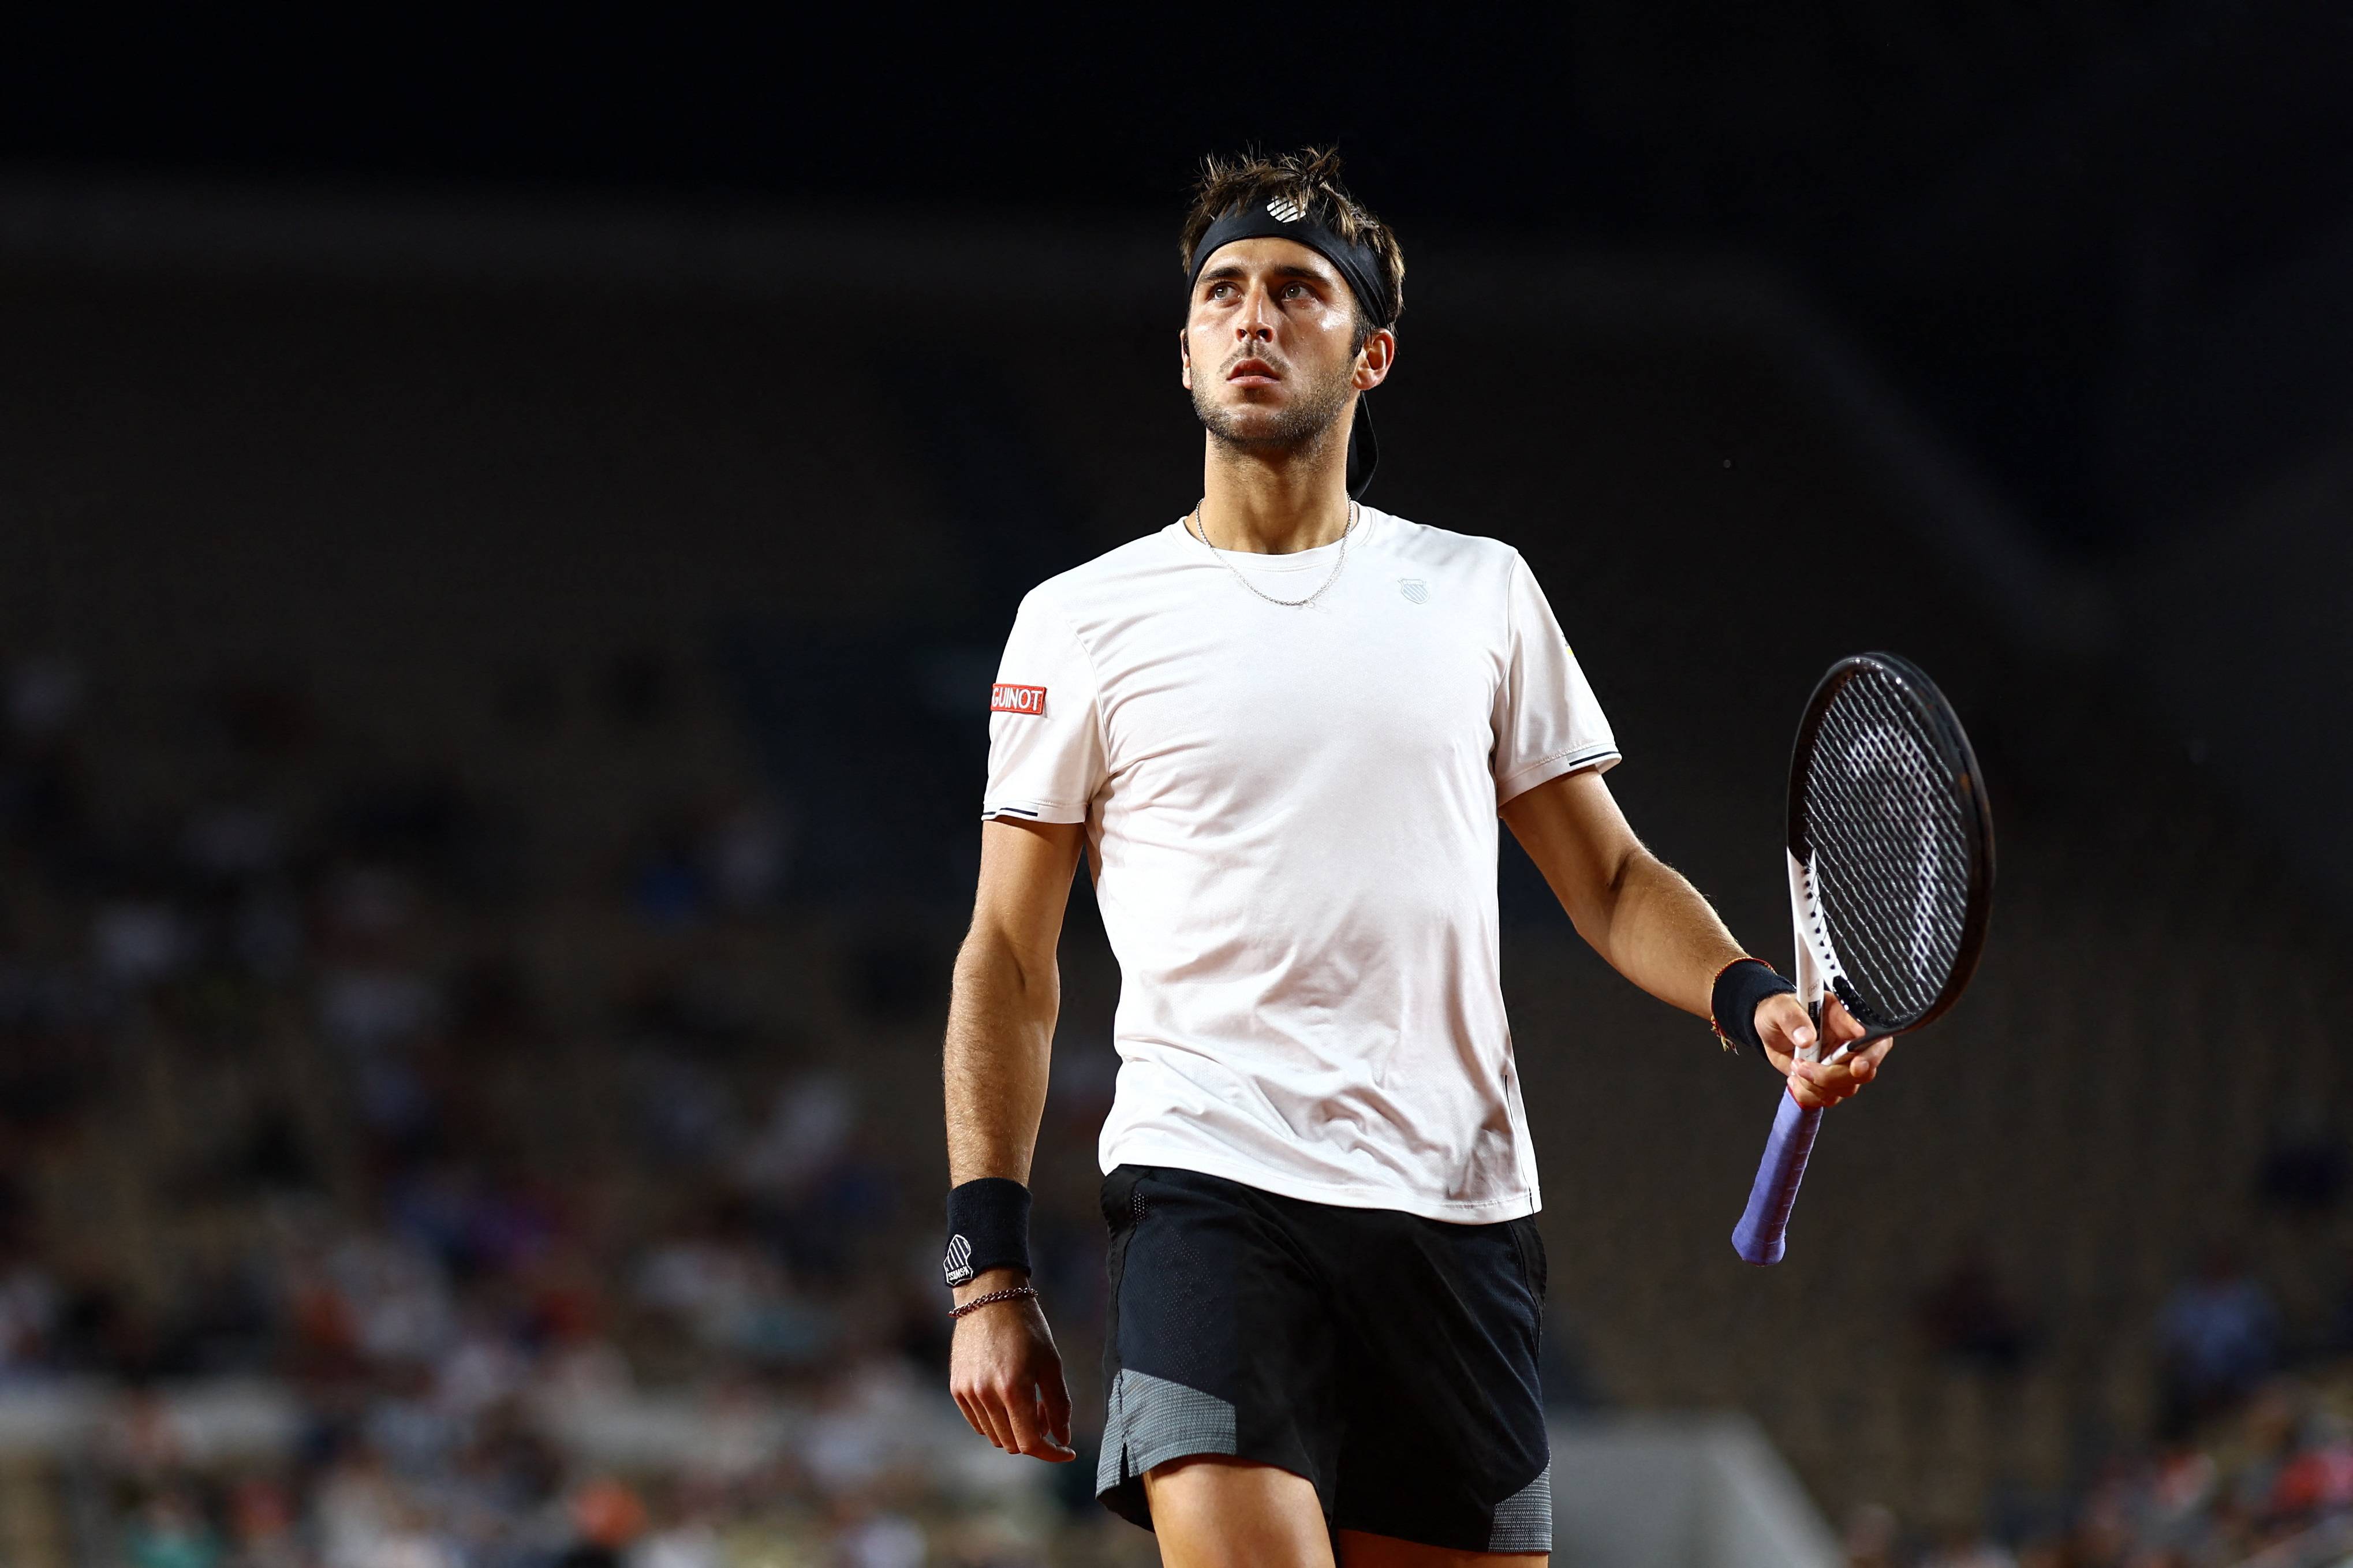 Tomás Etcheverry, la gran sorpresa de Roland Garros, buscará hacer historia y alcanzar semifinales del torneo (Foto: Reuters)